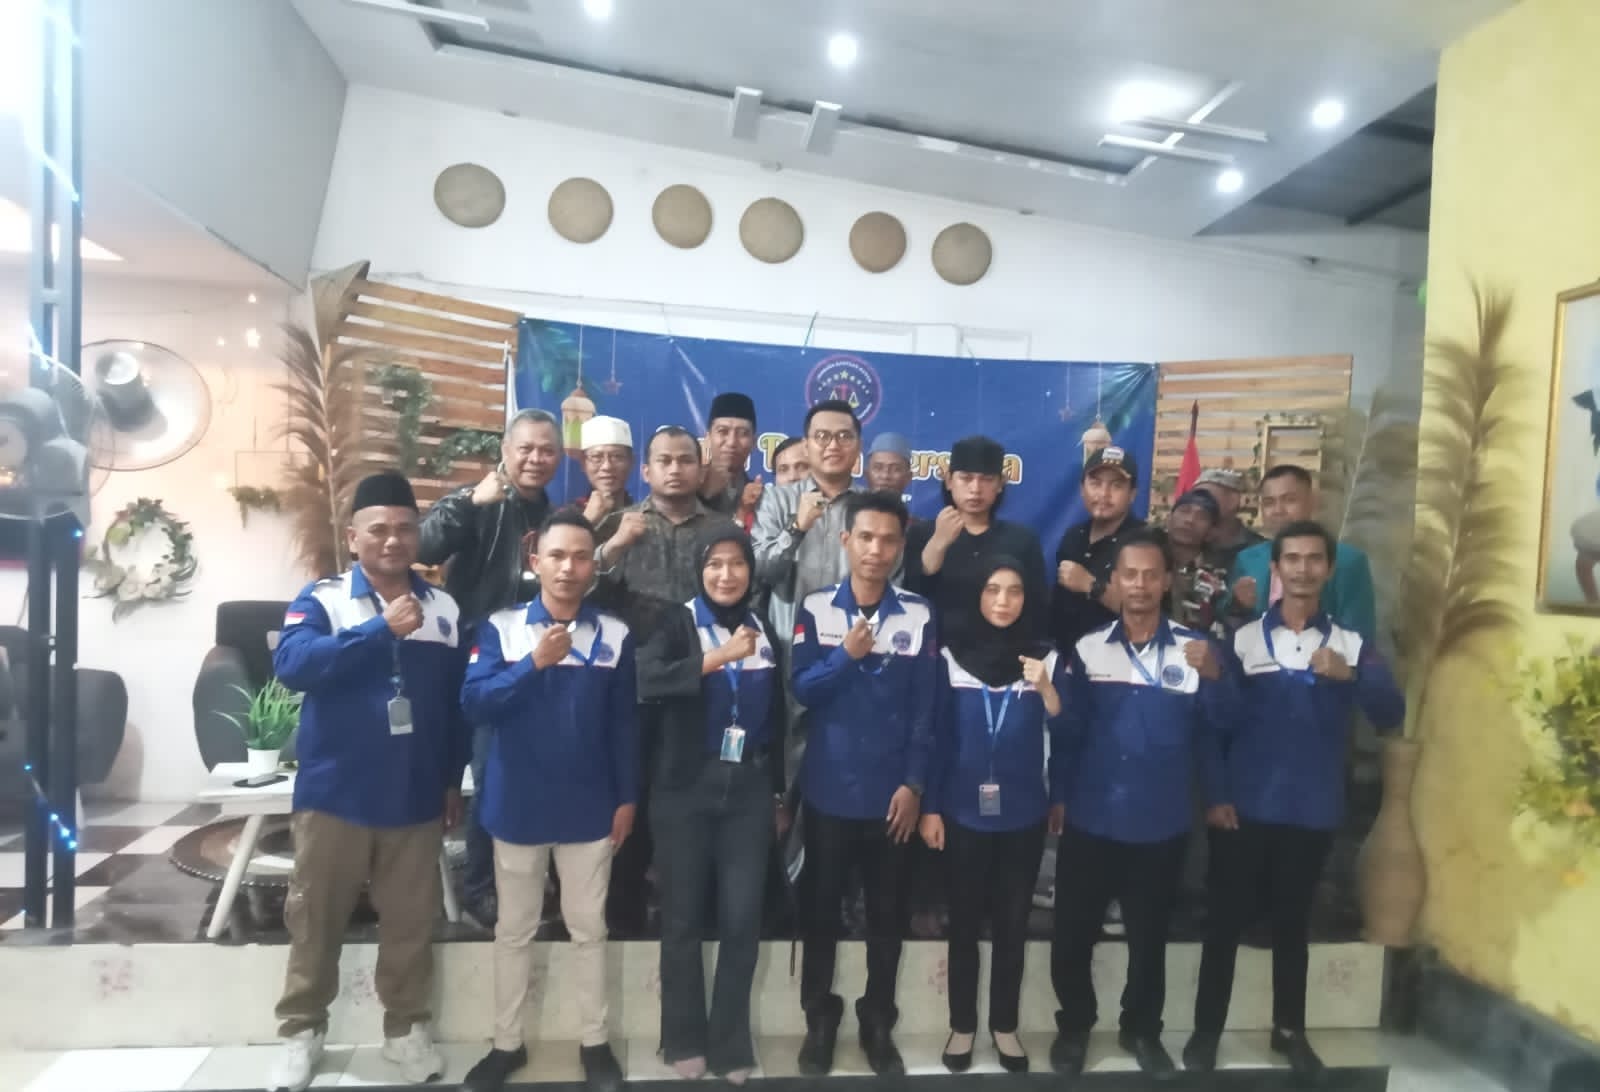 LBH BSN Gelar Kegiatan Buka Puasa  Bersama dan Penyerahan SK LBH BSN DPC Kabupaten Serang